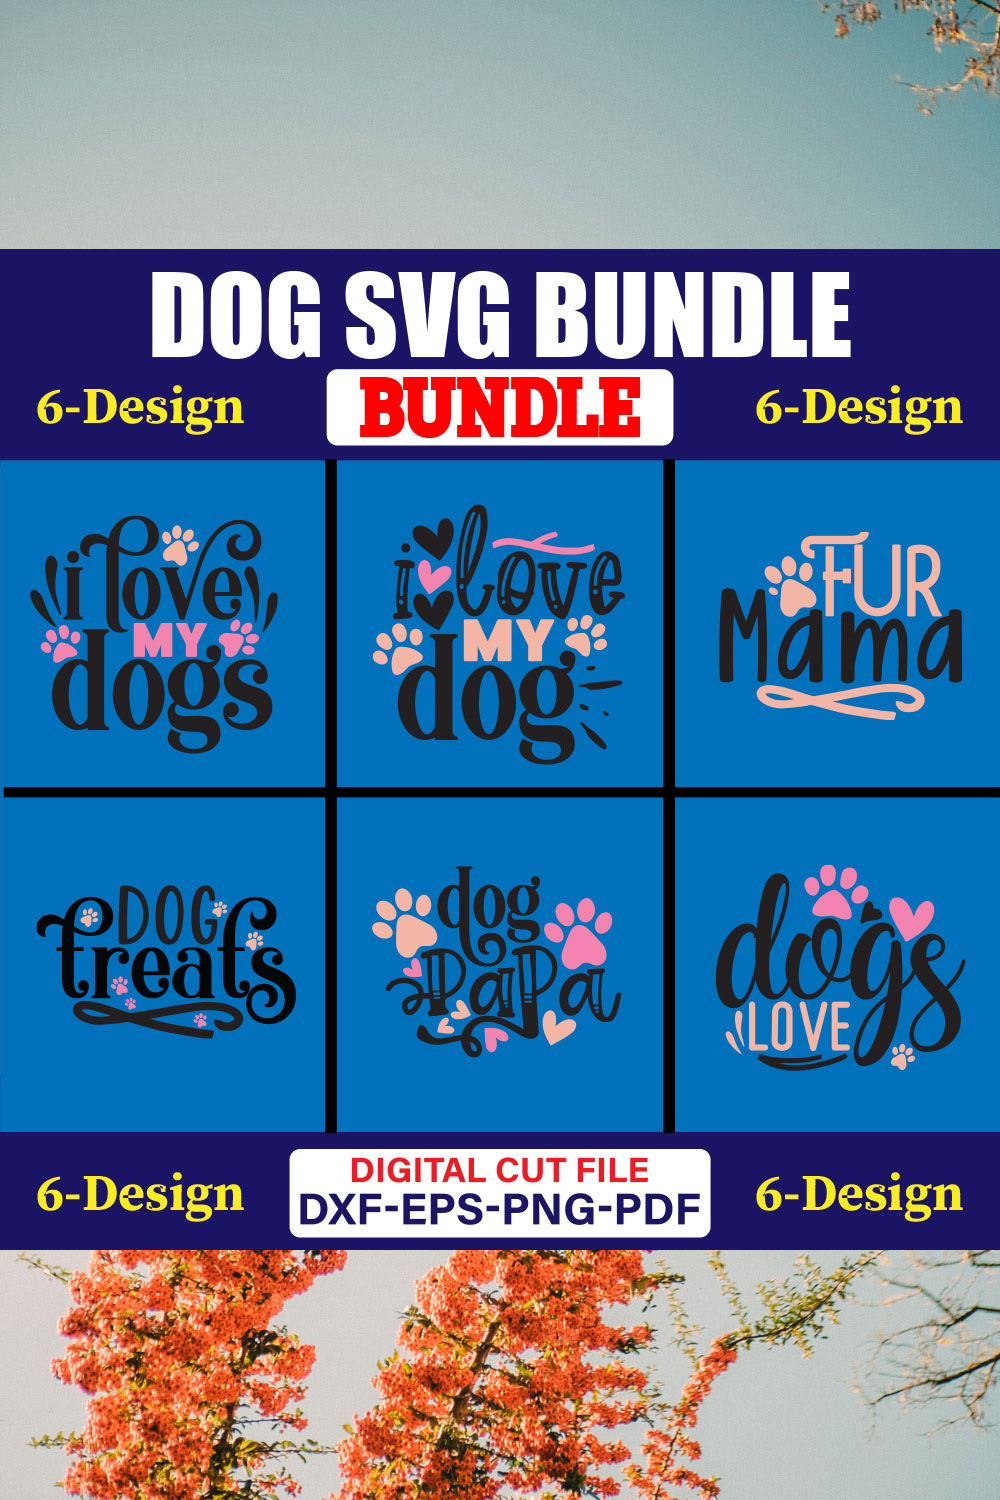 Dog SVG T-shirt Design Bundle Vol-17 pinterest preview image.